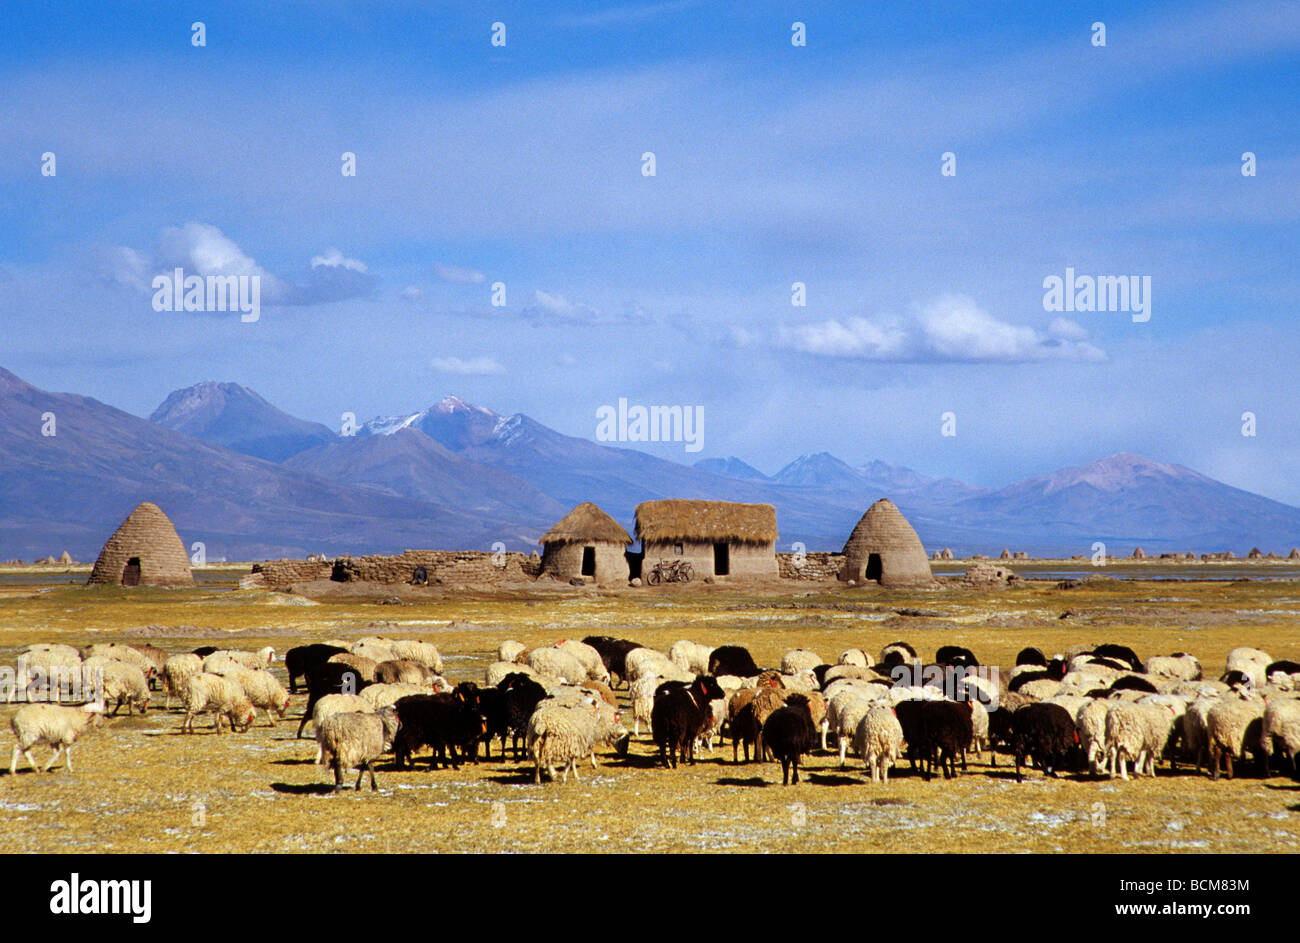 Flock of sheep, Santa Ana de Chipaya, Bolivia Stock Photo